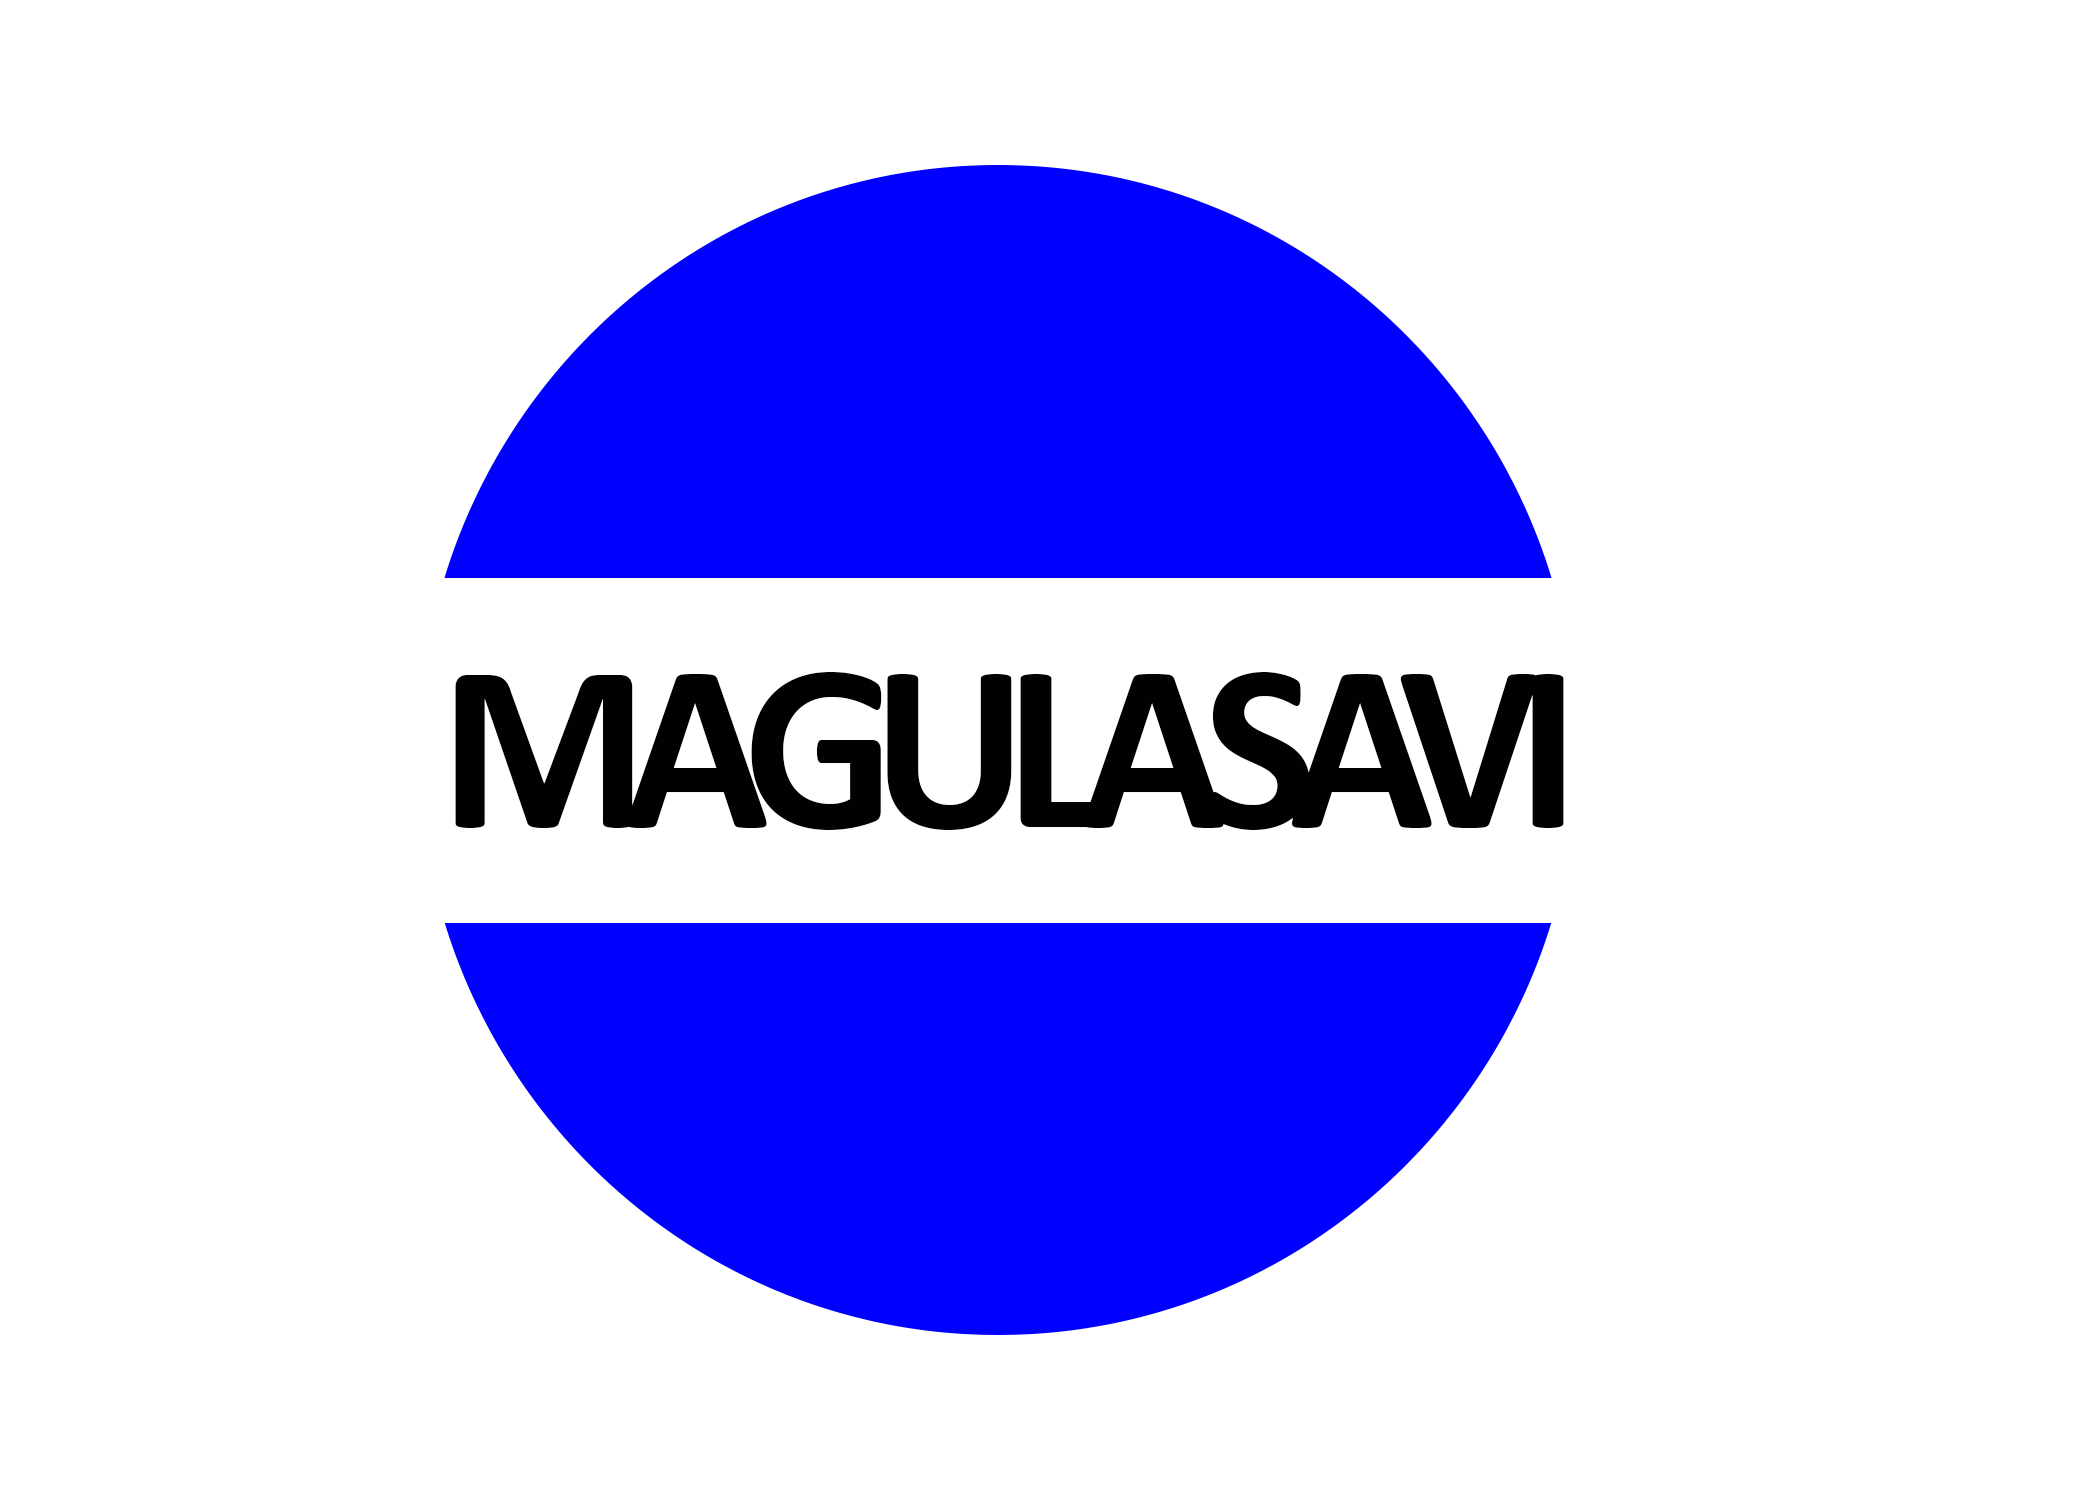 Magulasavi